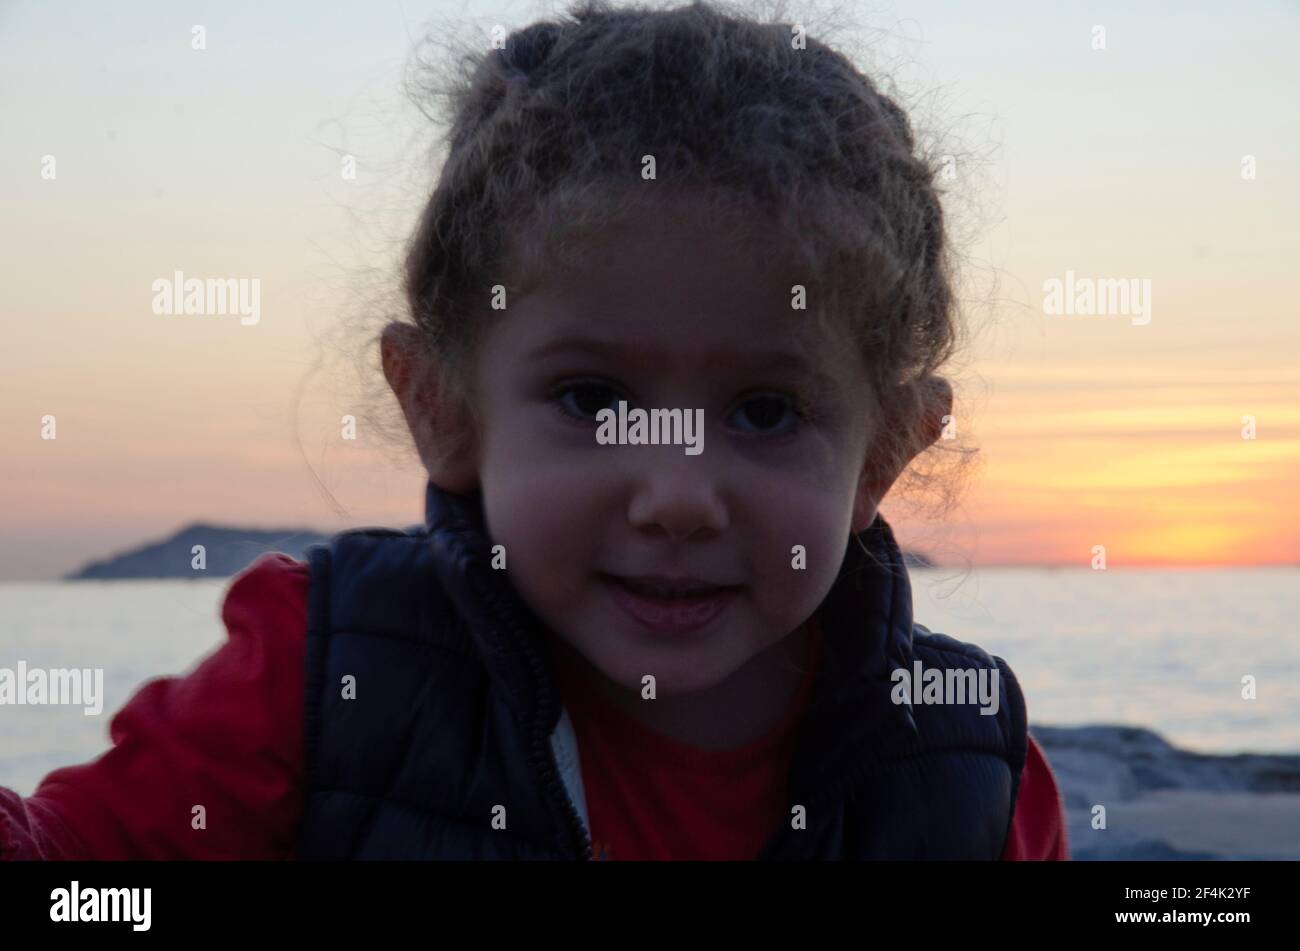 chubby piccola ragazza con capelli biondi fluttering guarda la macchina fotografica parte anteriore della vista del tramonto, volto e guancia a fuoco selettivo Foto Stock